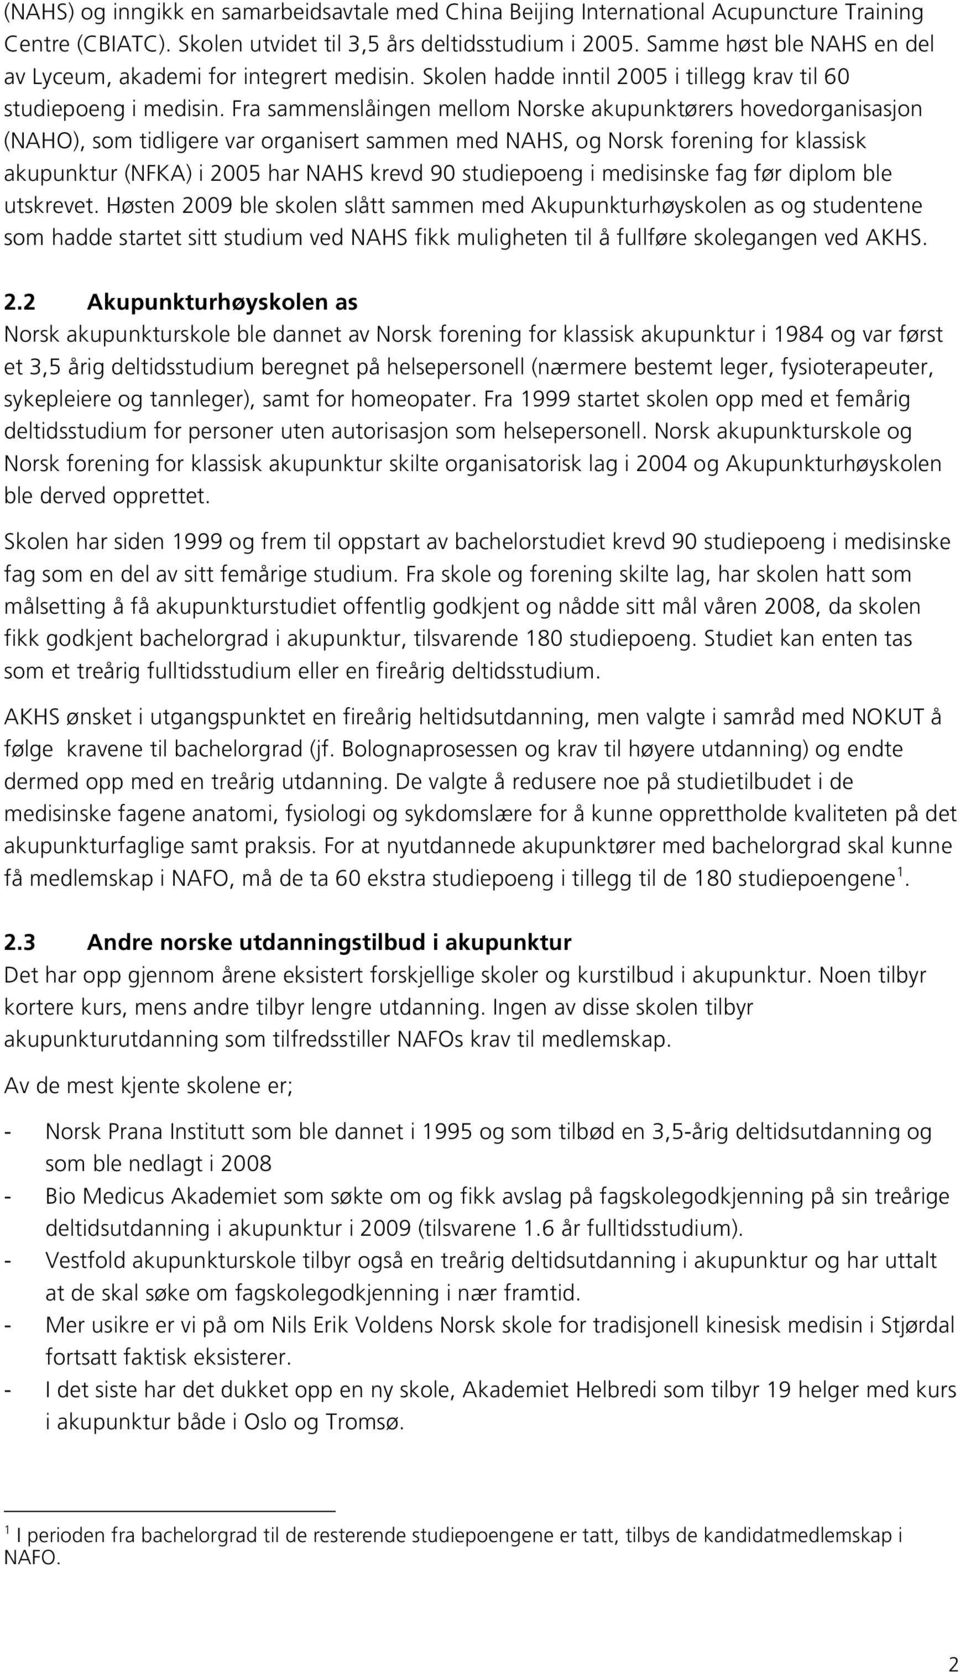 Fra sammenslåingen mellom Norske akupunktørers hovedorganisasjon (NAHO), som tidligere var organisert sammen med NAHS, og Norsk forening for klassisk akupunktur (NFKA) i 2005 har NAHS krevd 90